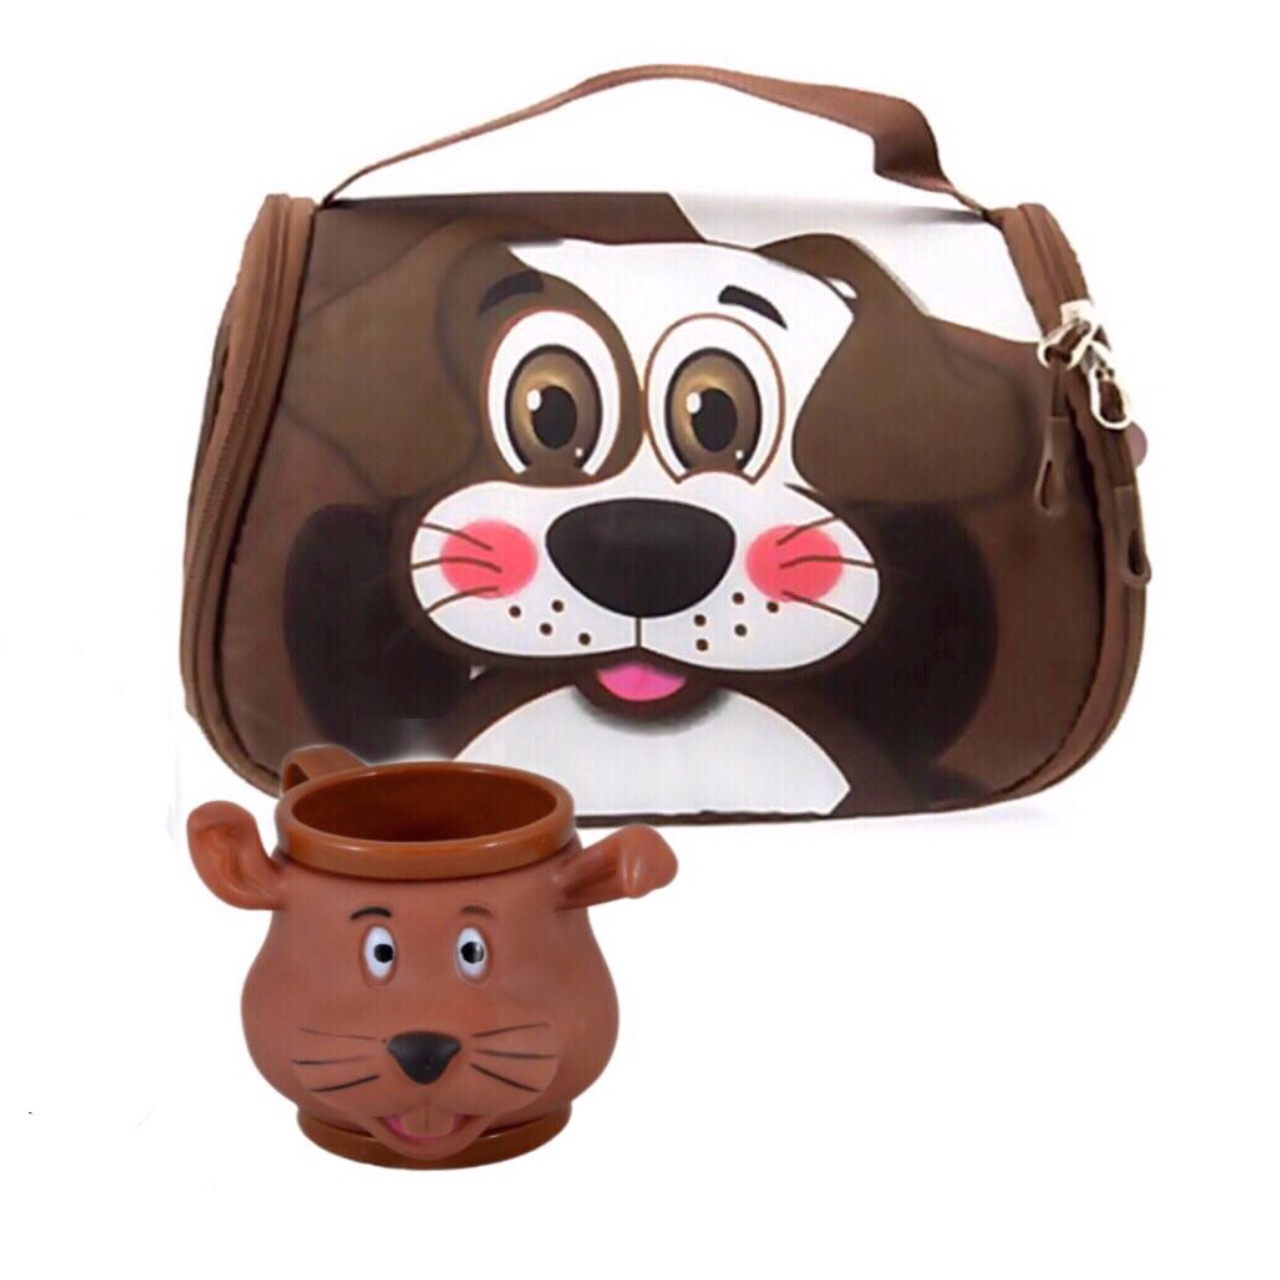 کیف نهاری کودک مدل سگ به همراه لیوان طرح سگ